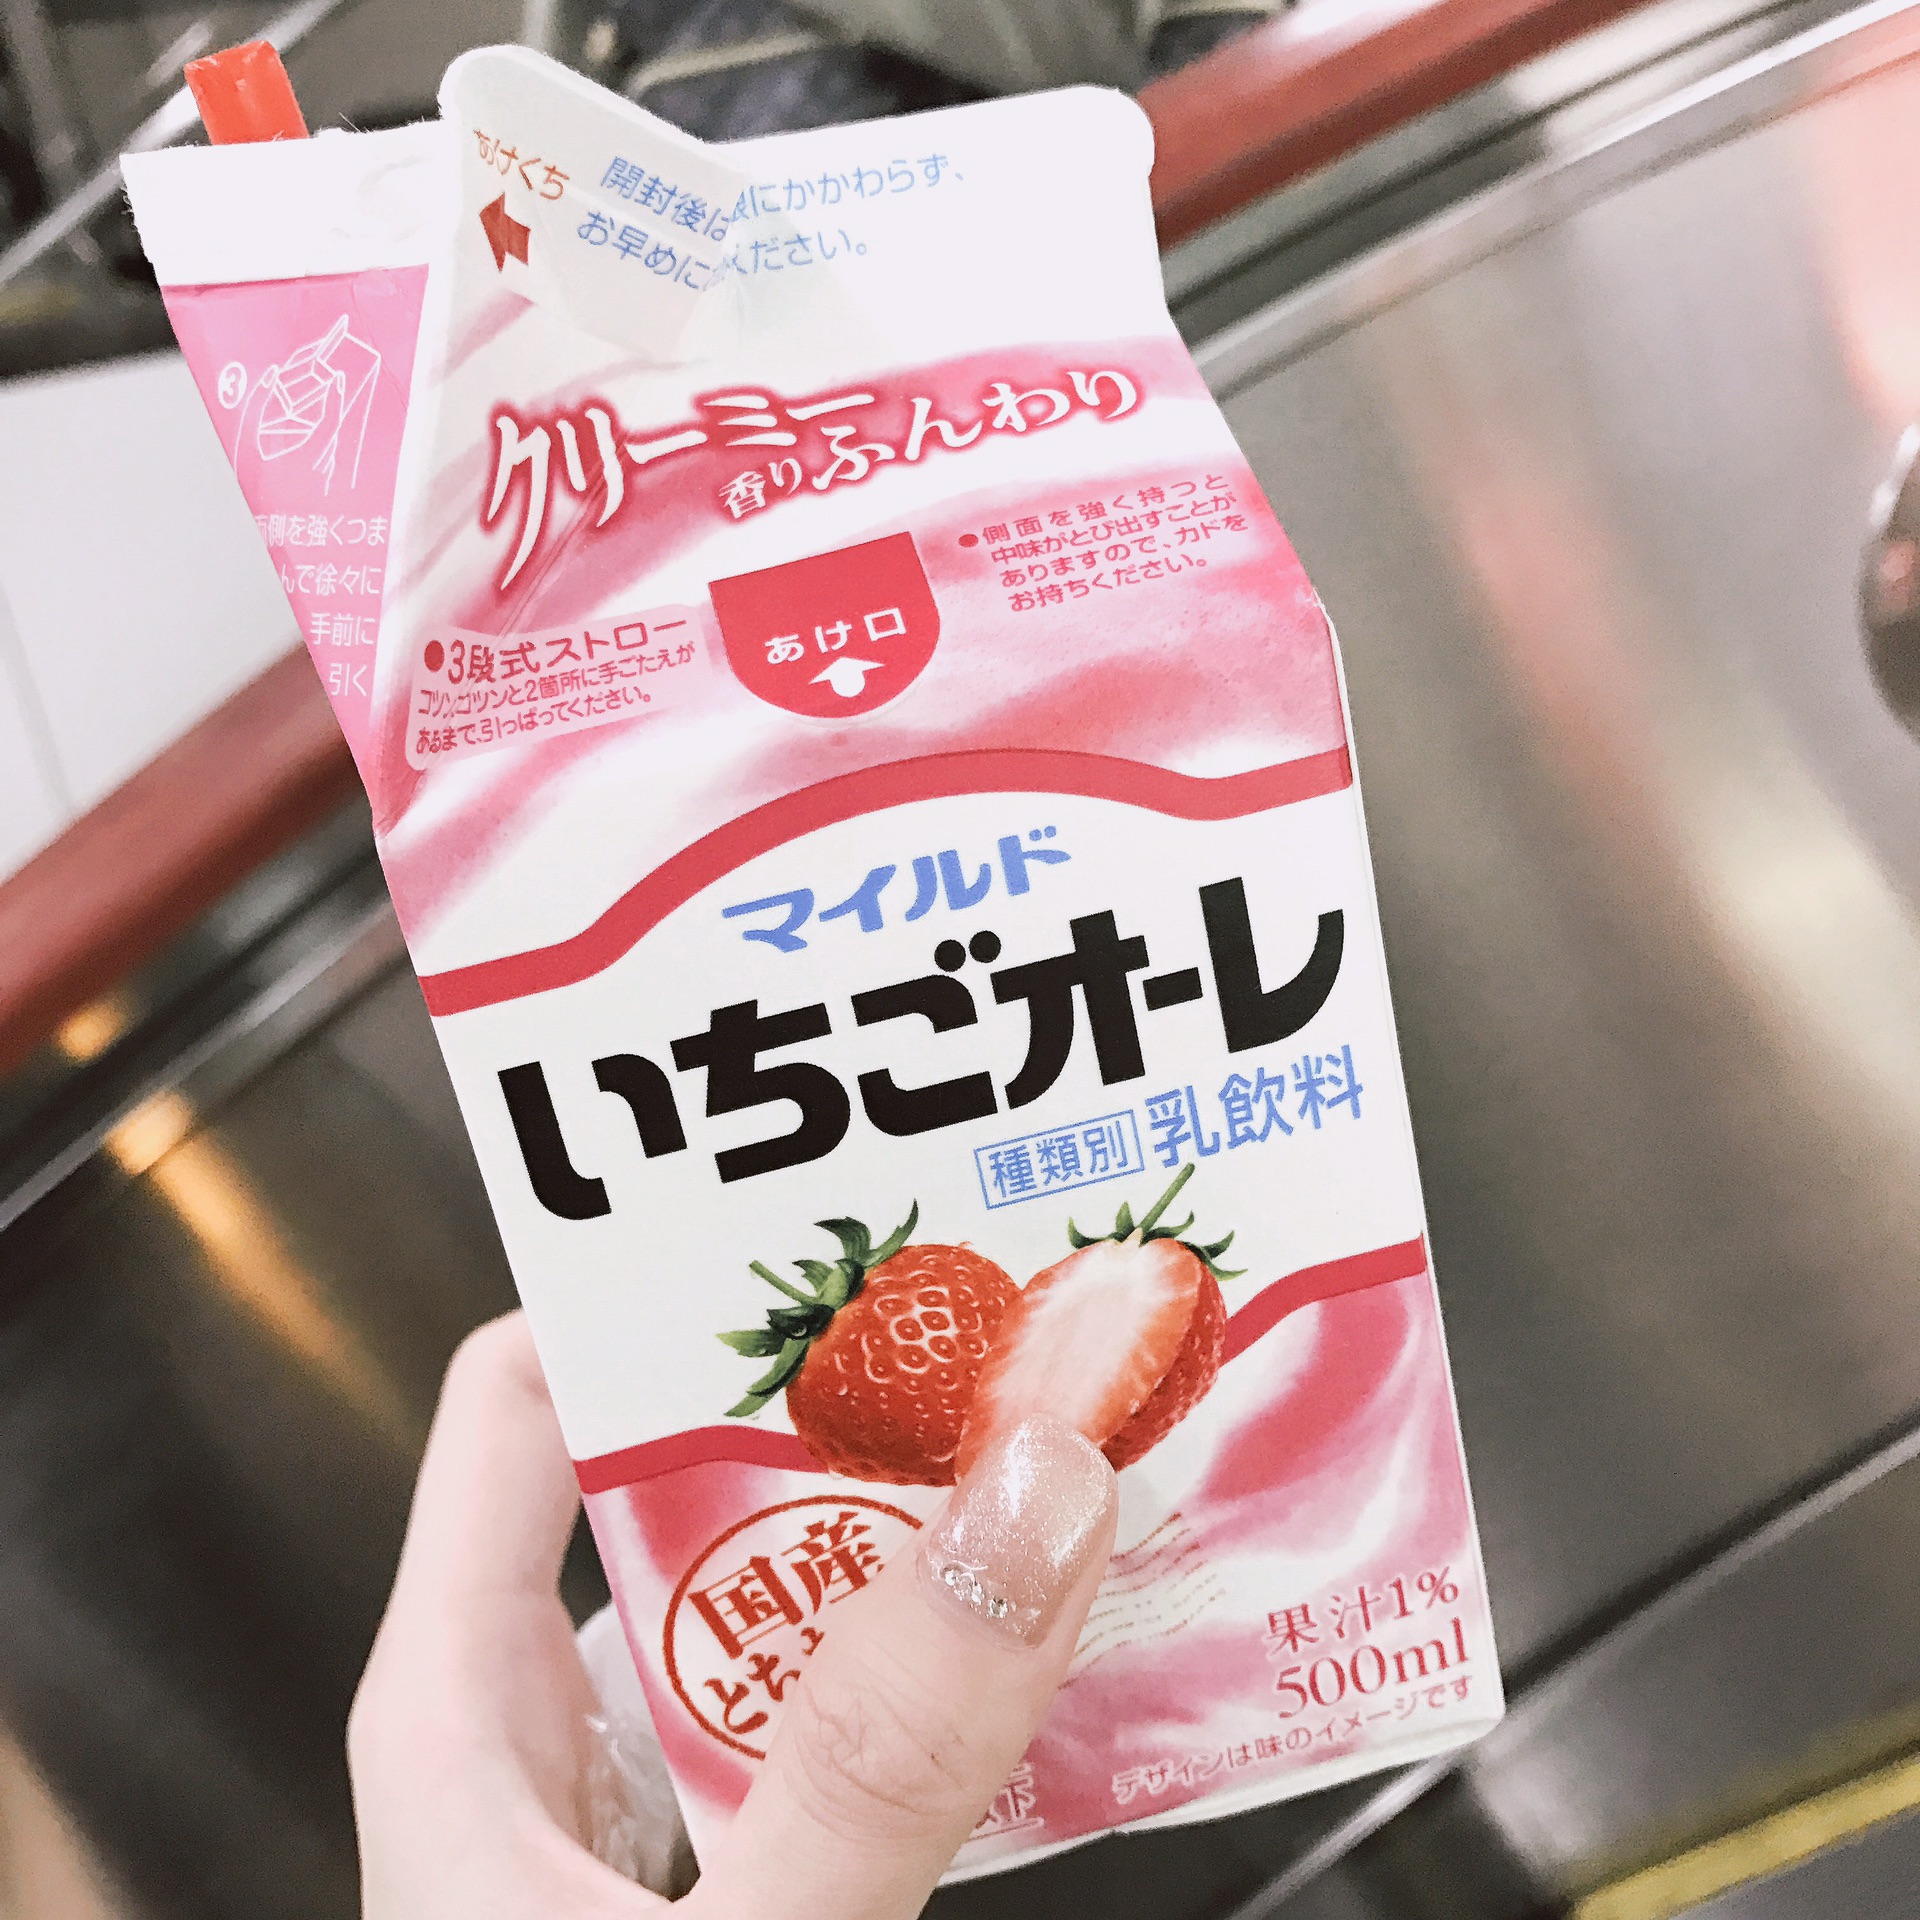 这个草莓牛奶味道很浓厚,一般超市都有,几乎是宵夜必备!